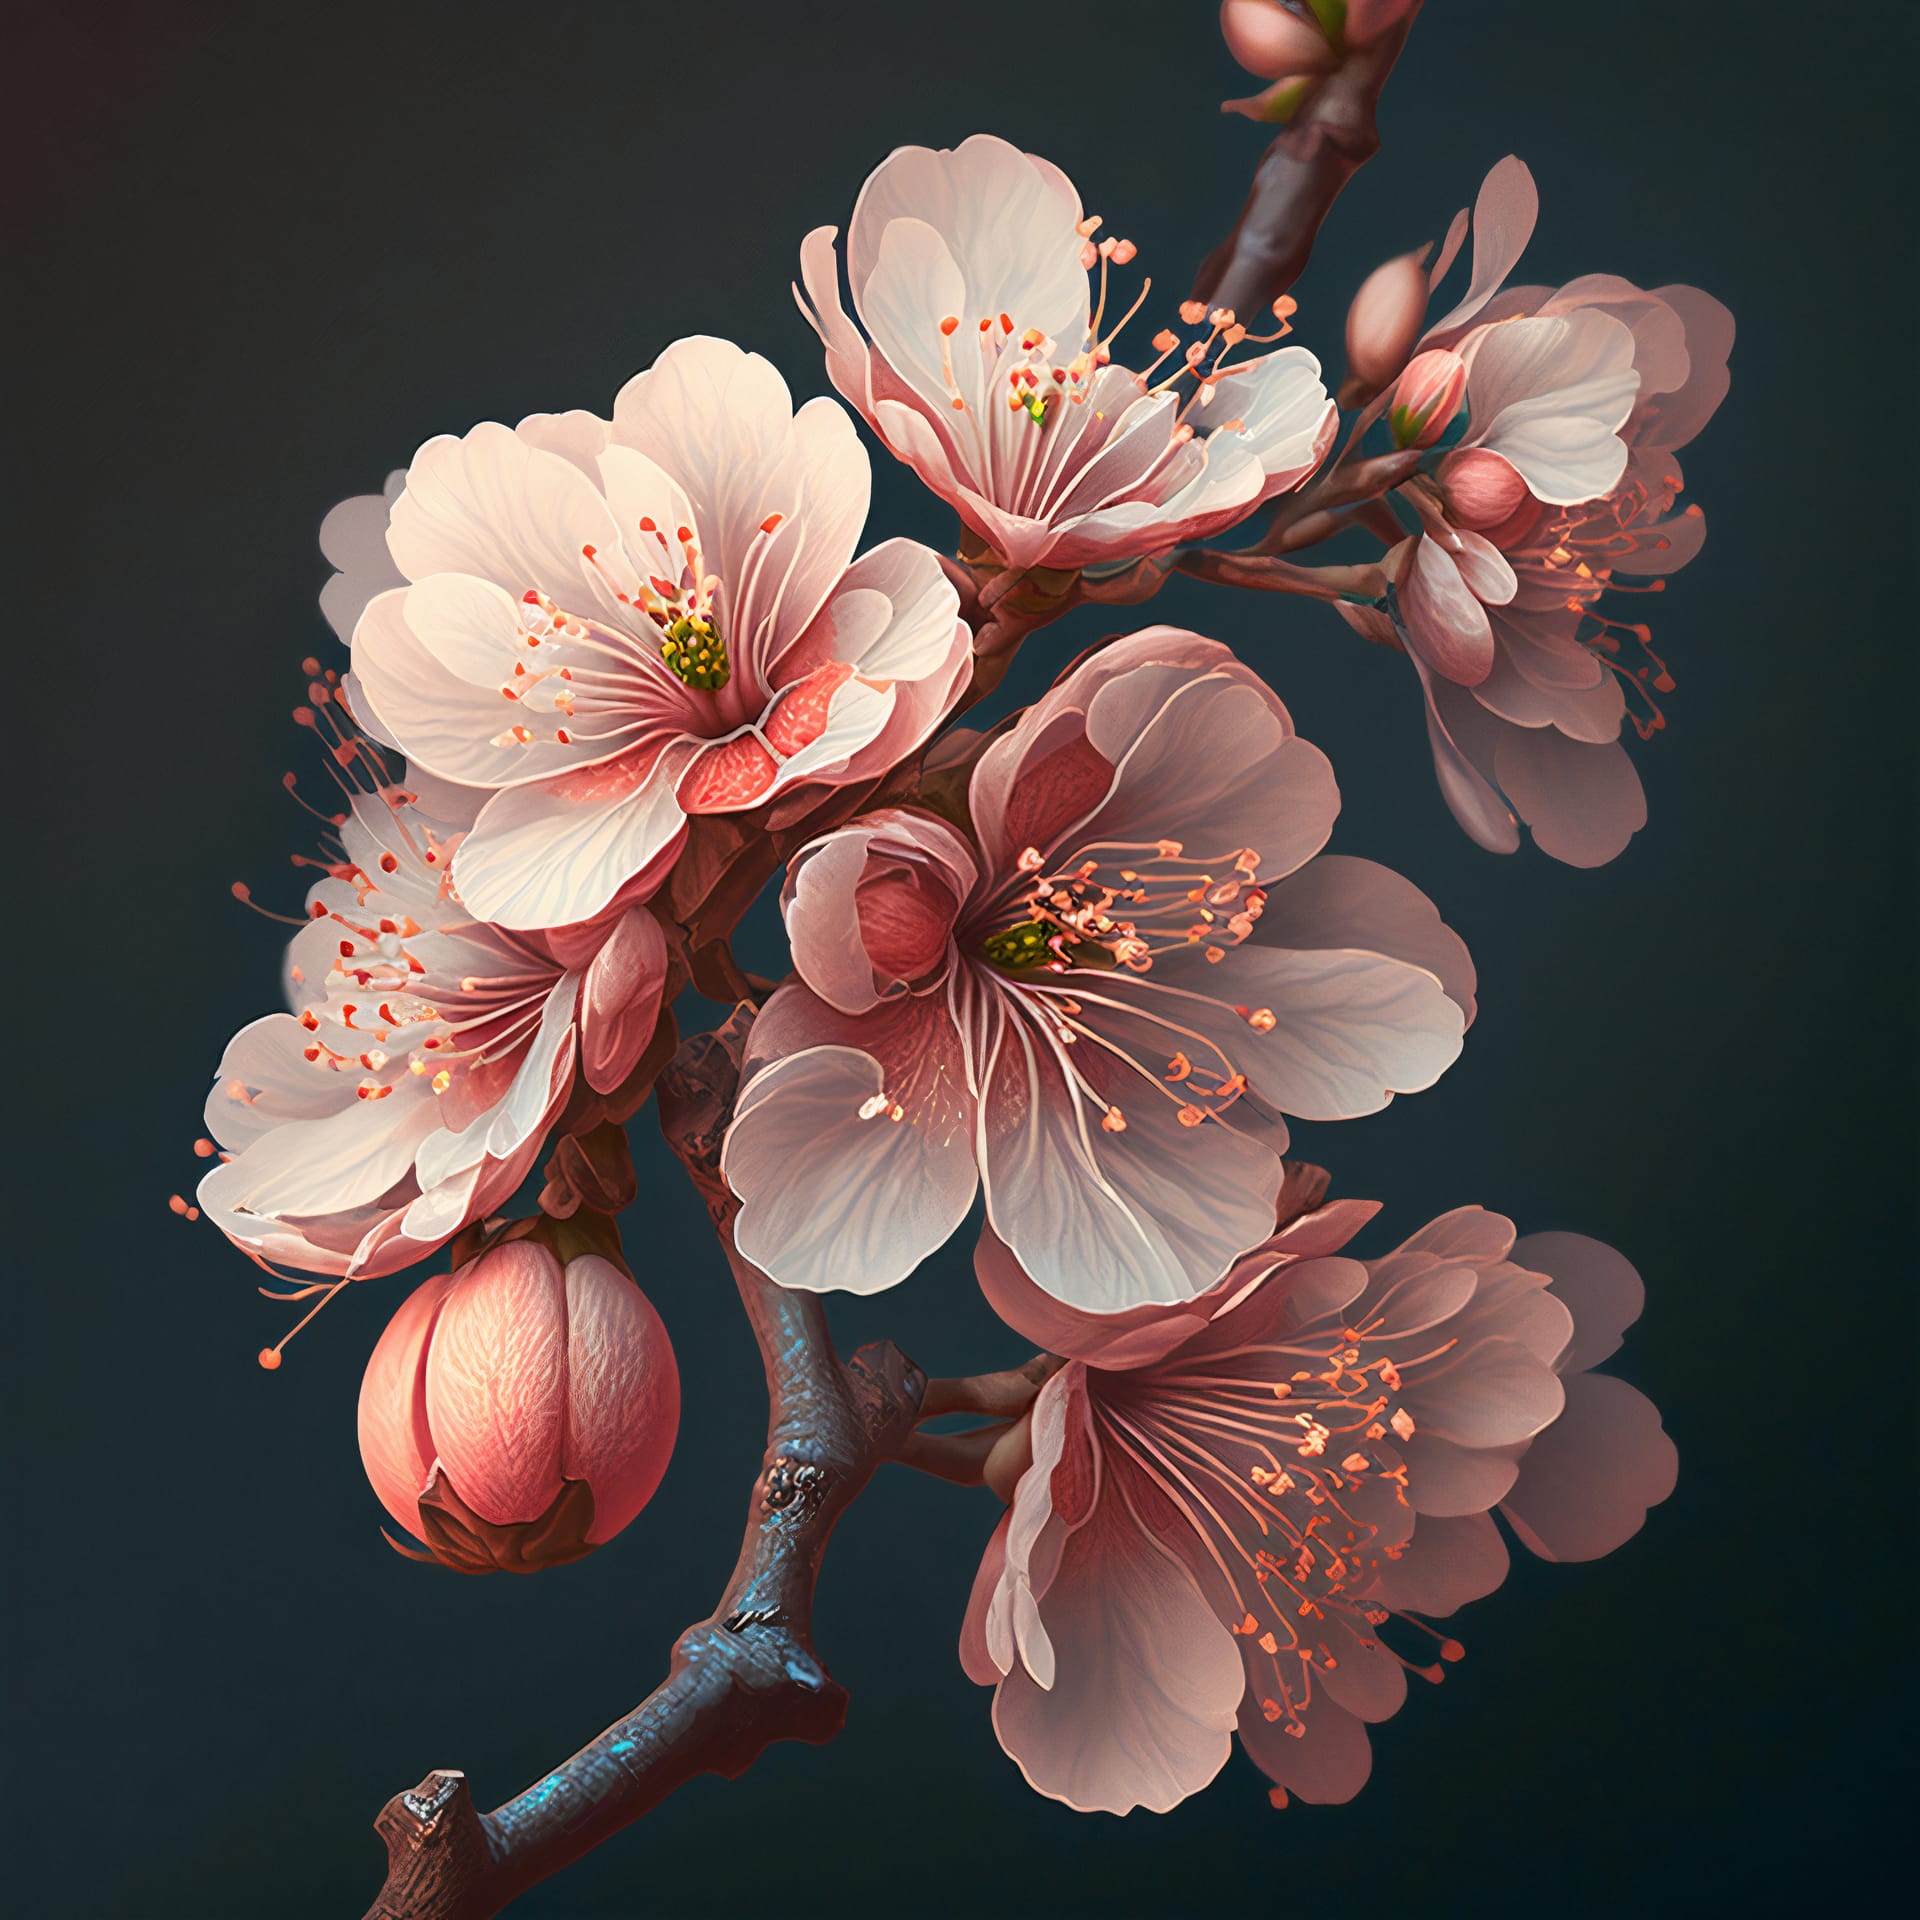 Cherry blossom beautiful sakura flowers pink cherry flowers